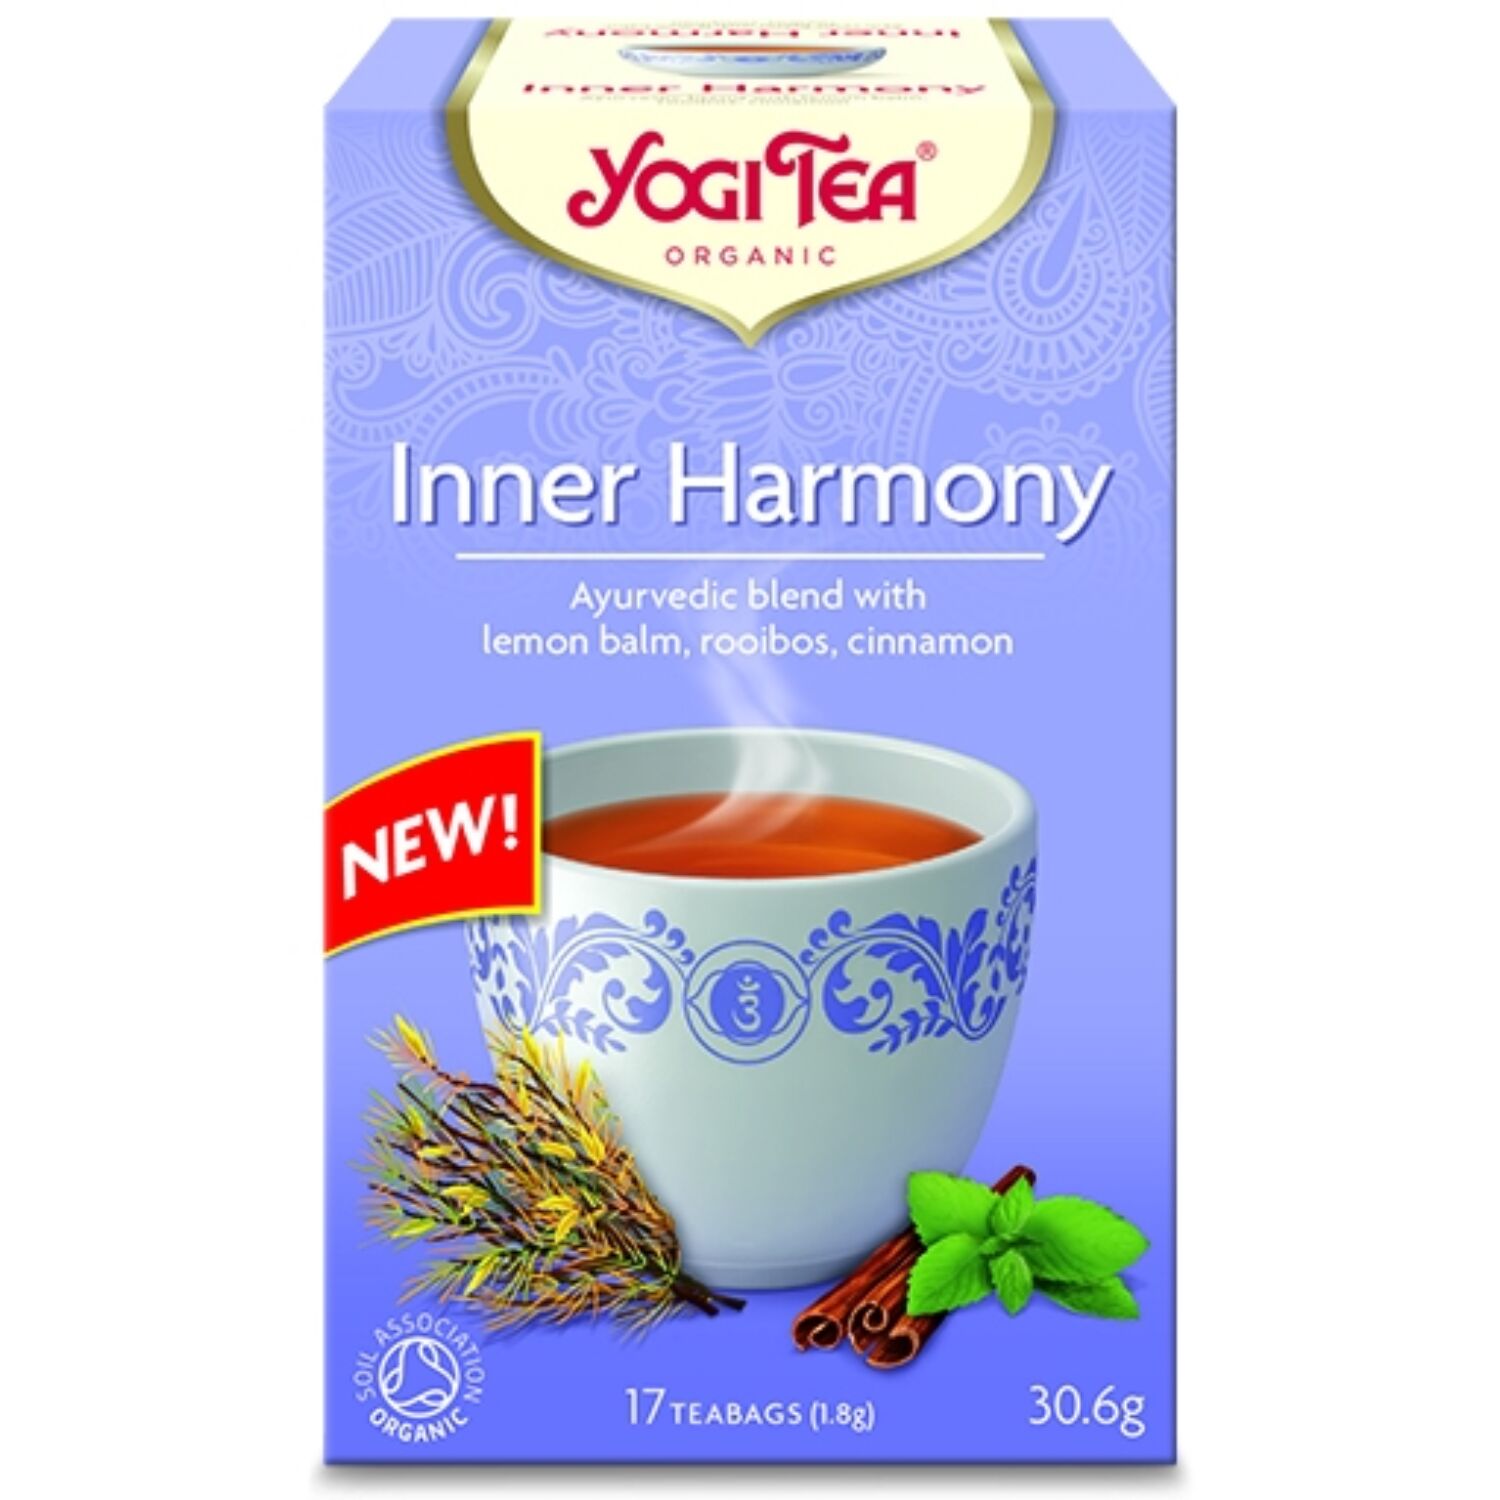 Yogi tea - Inner Harmony - Belső harmónia - egyensúly